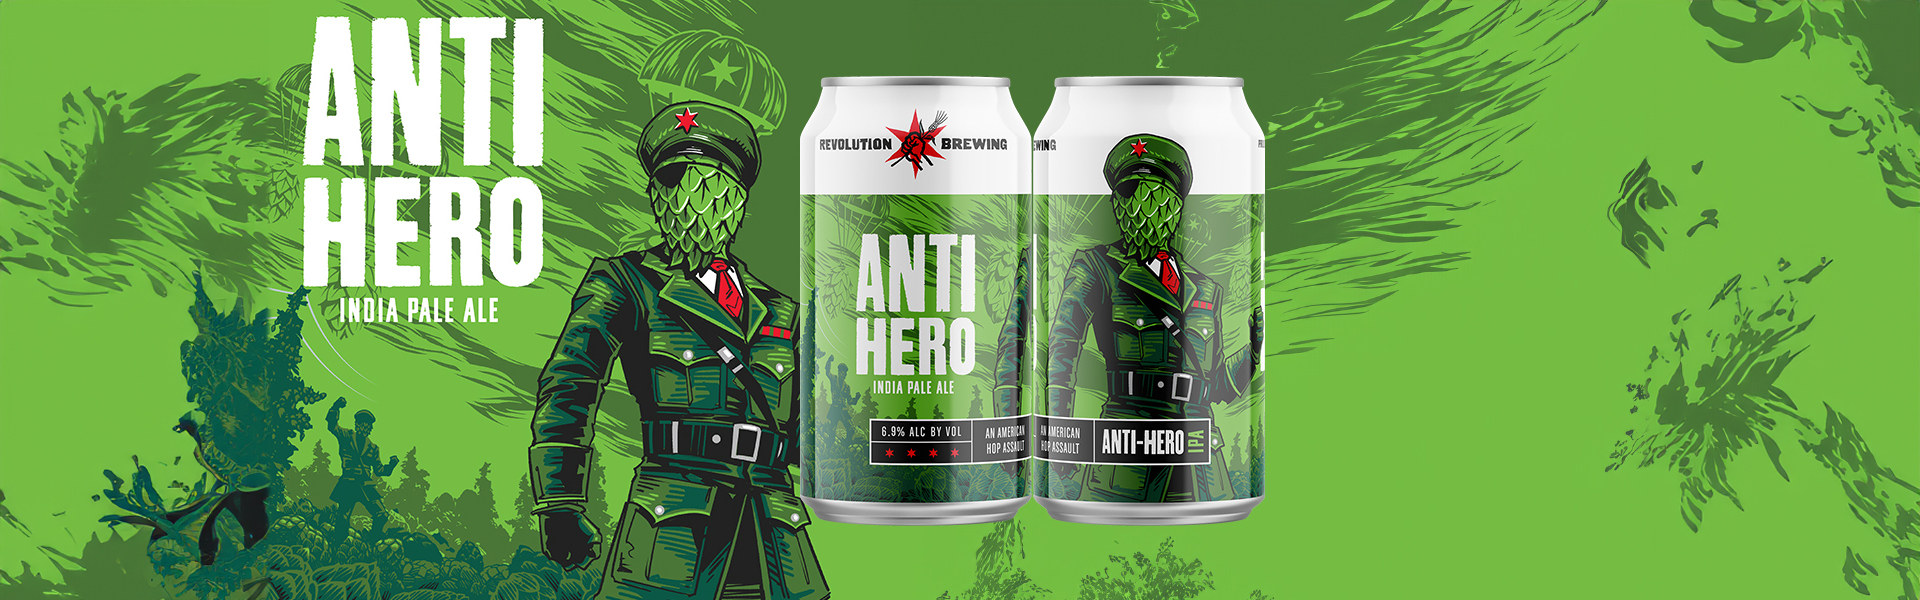 Revolution Brewery lanserar sitt flaggskepp Anti-Hero West Coast IPA på Systembolaget.